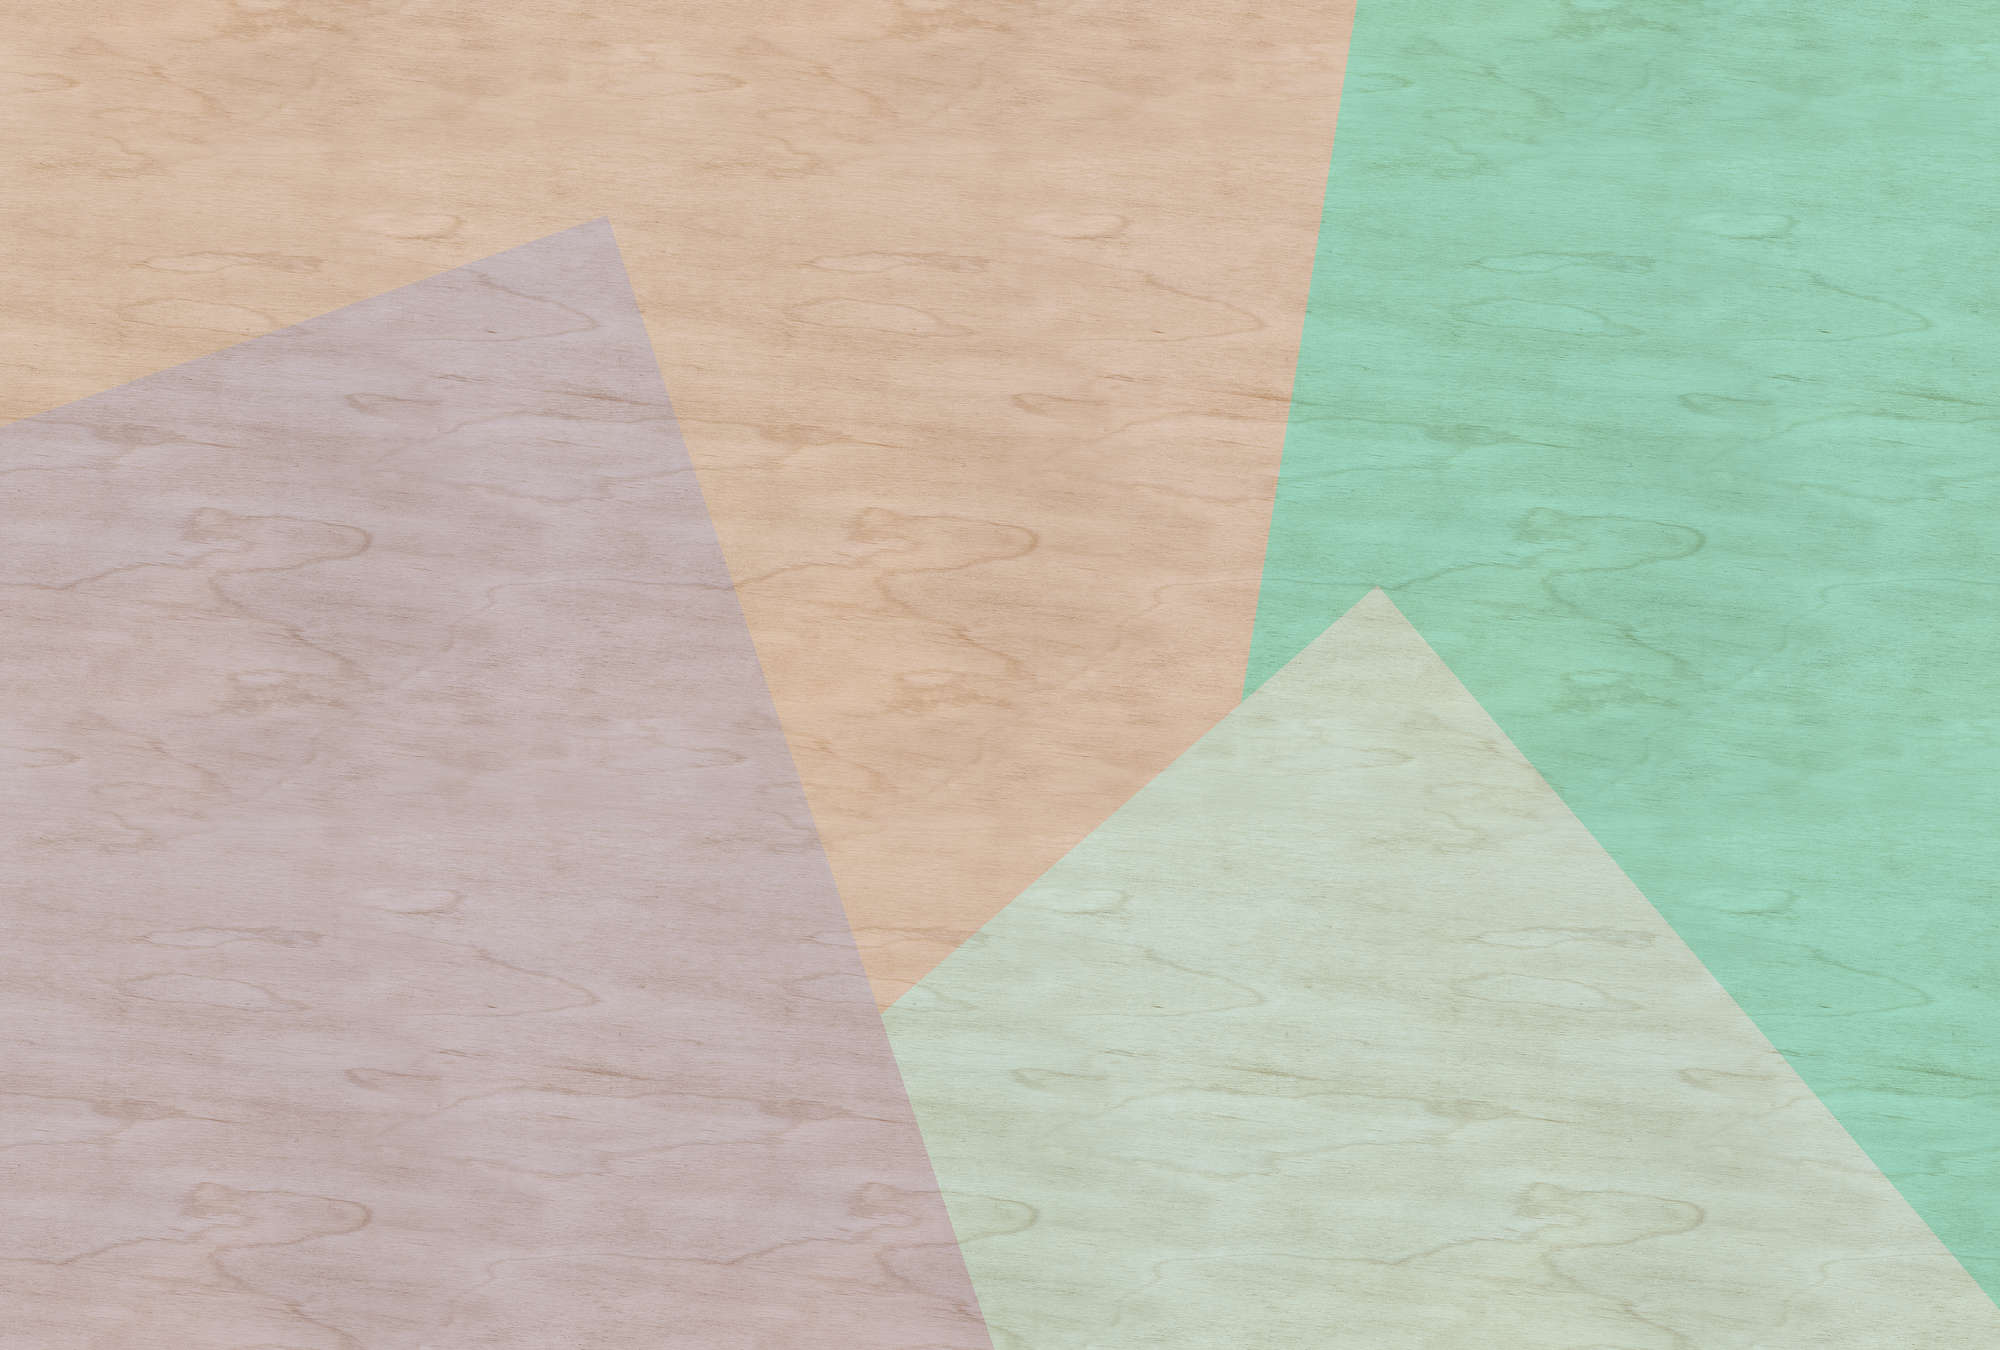             Inaly 1 - Papier peint abstrait coloré à structure contreplaquée - beige, vert | intissé lisse nacré
        